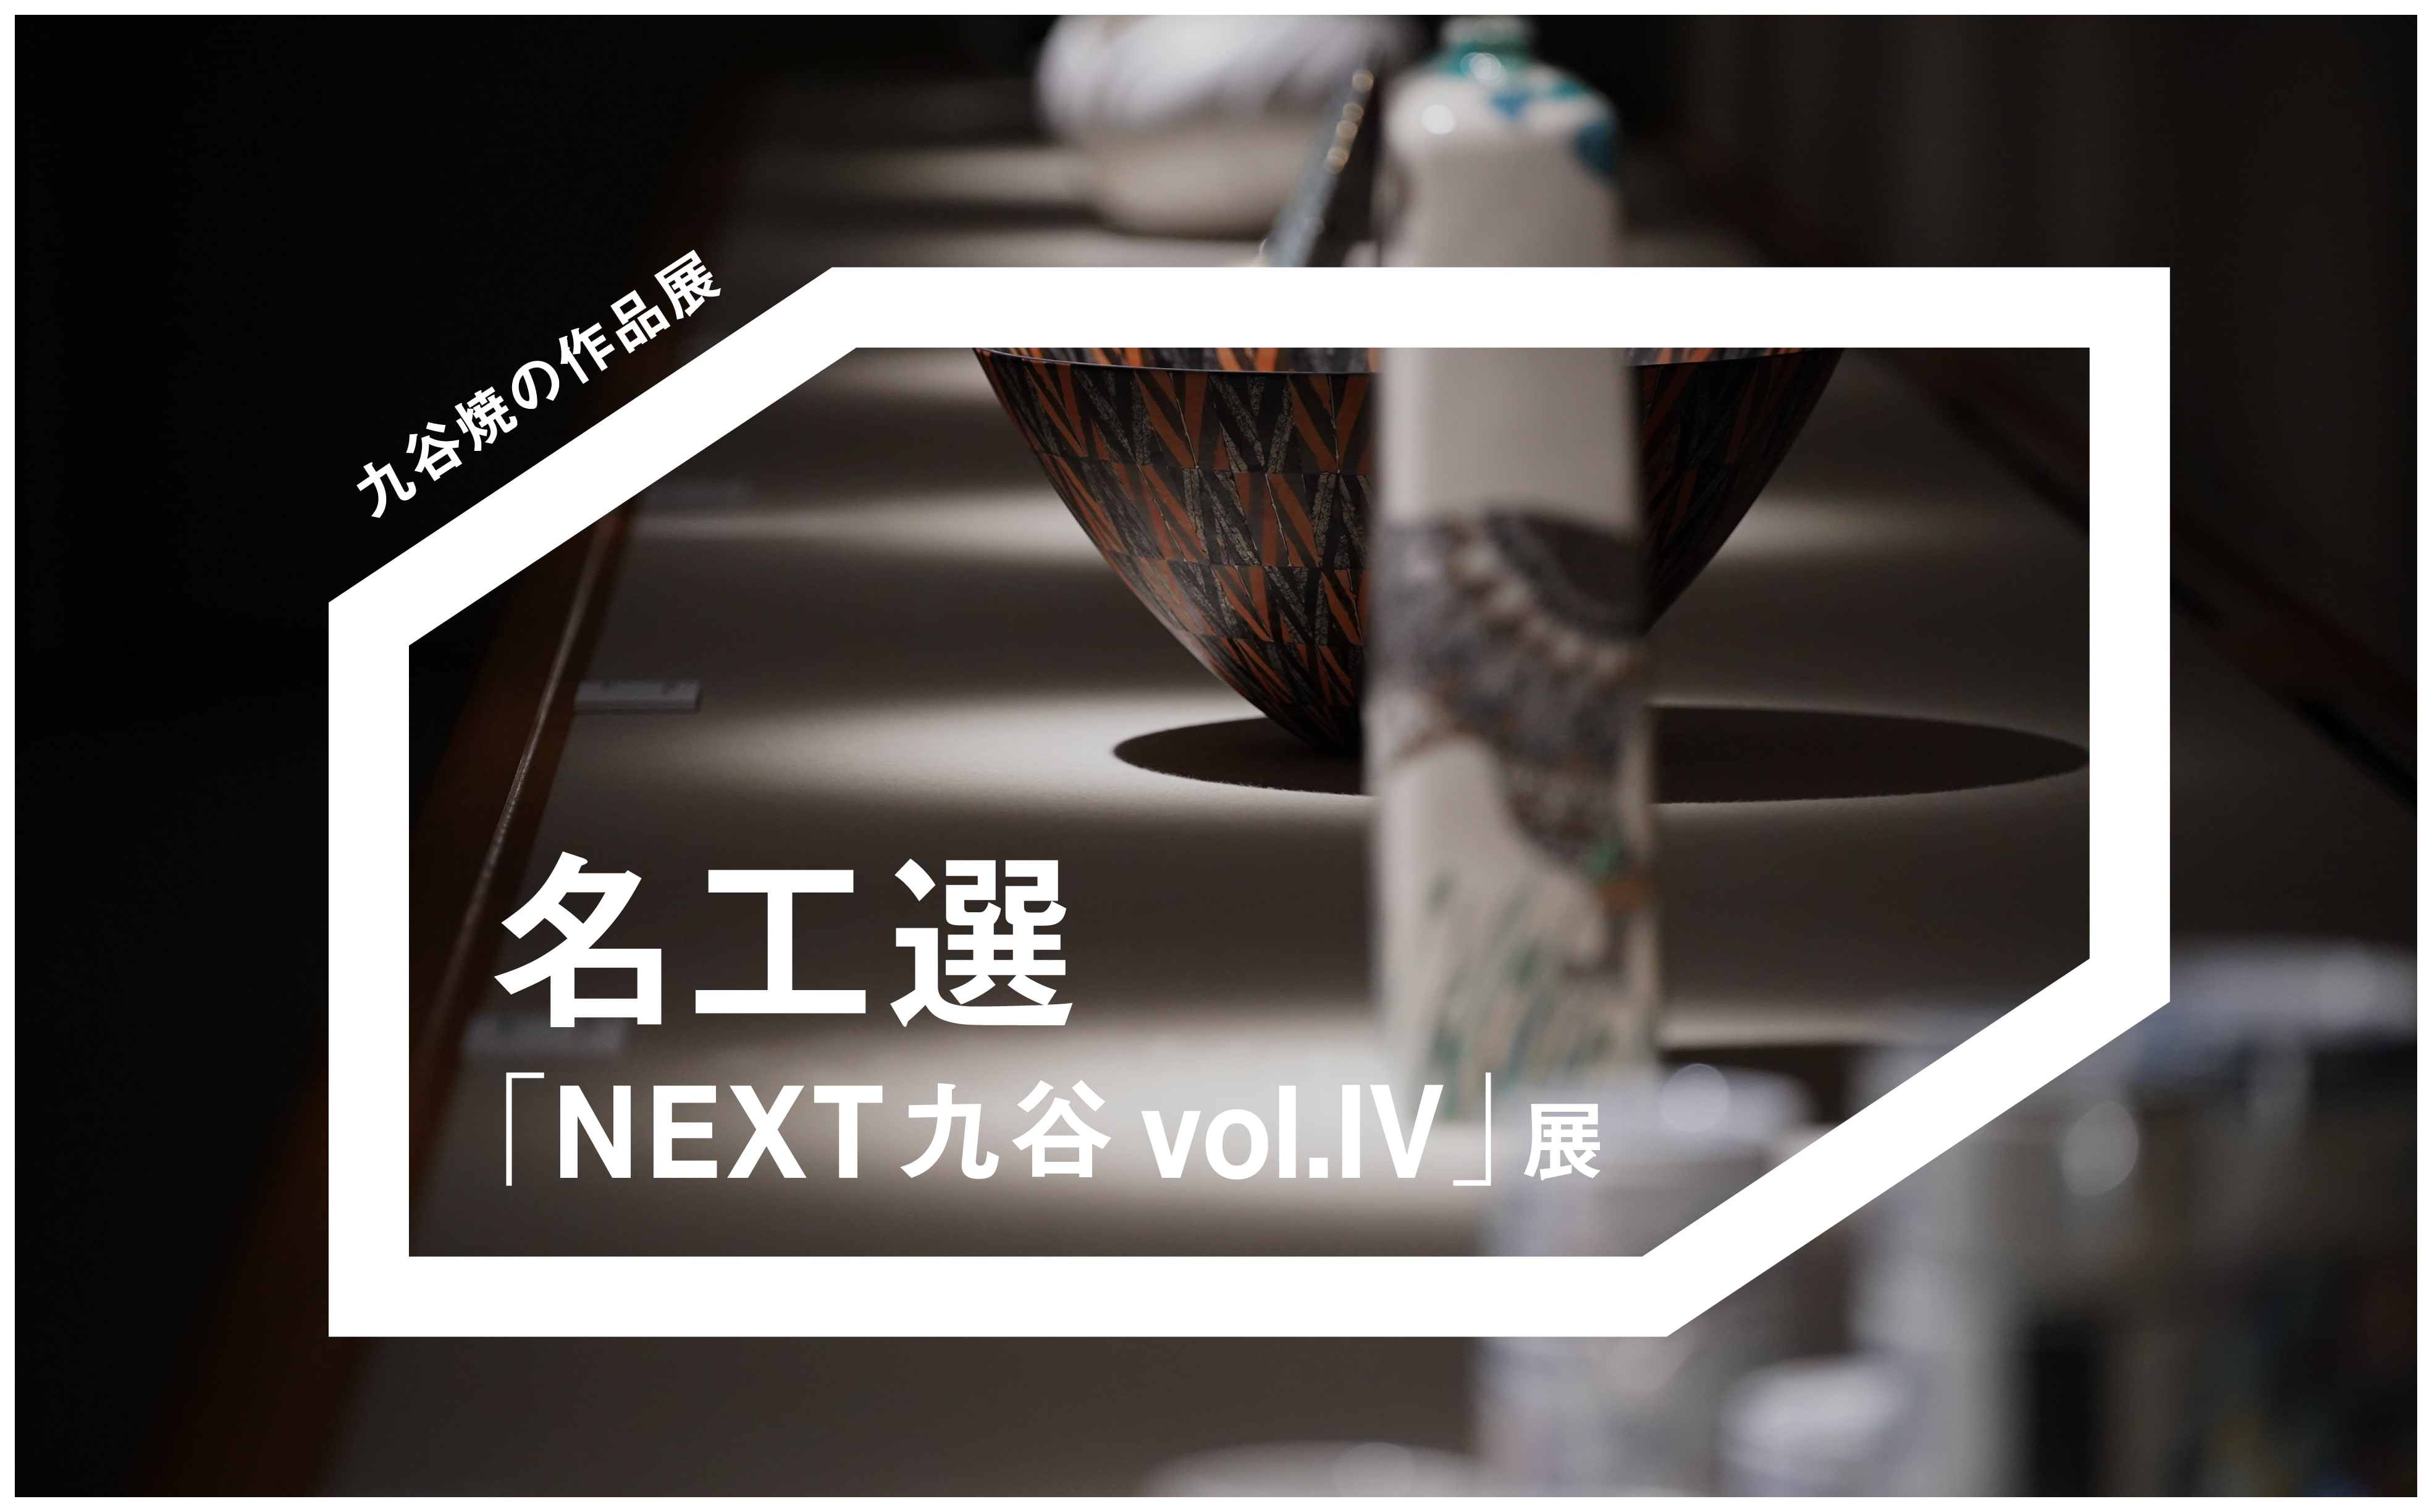 名工選「NEXT九谷 vol.IV」展